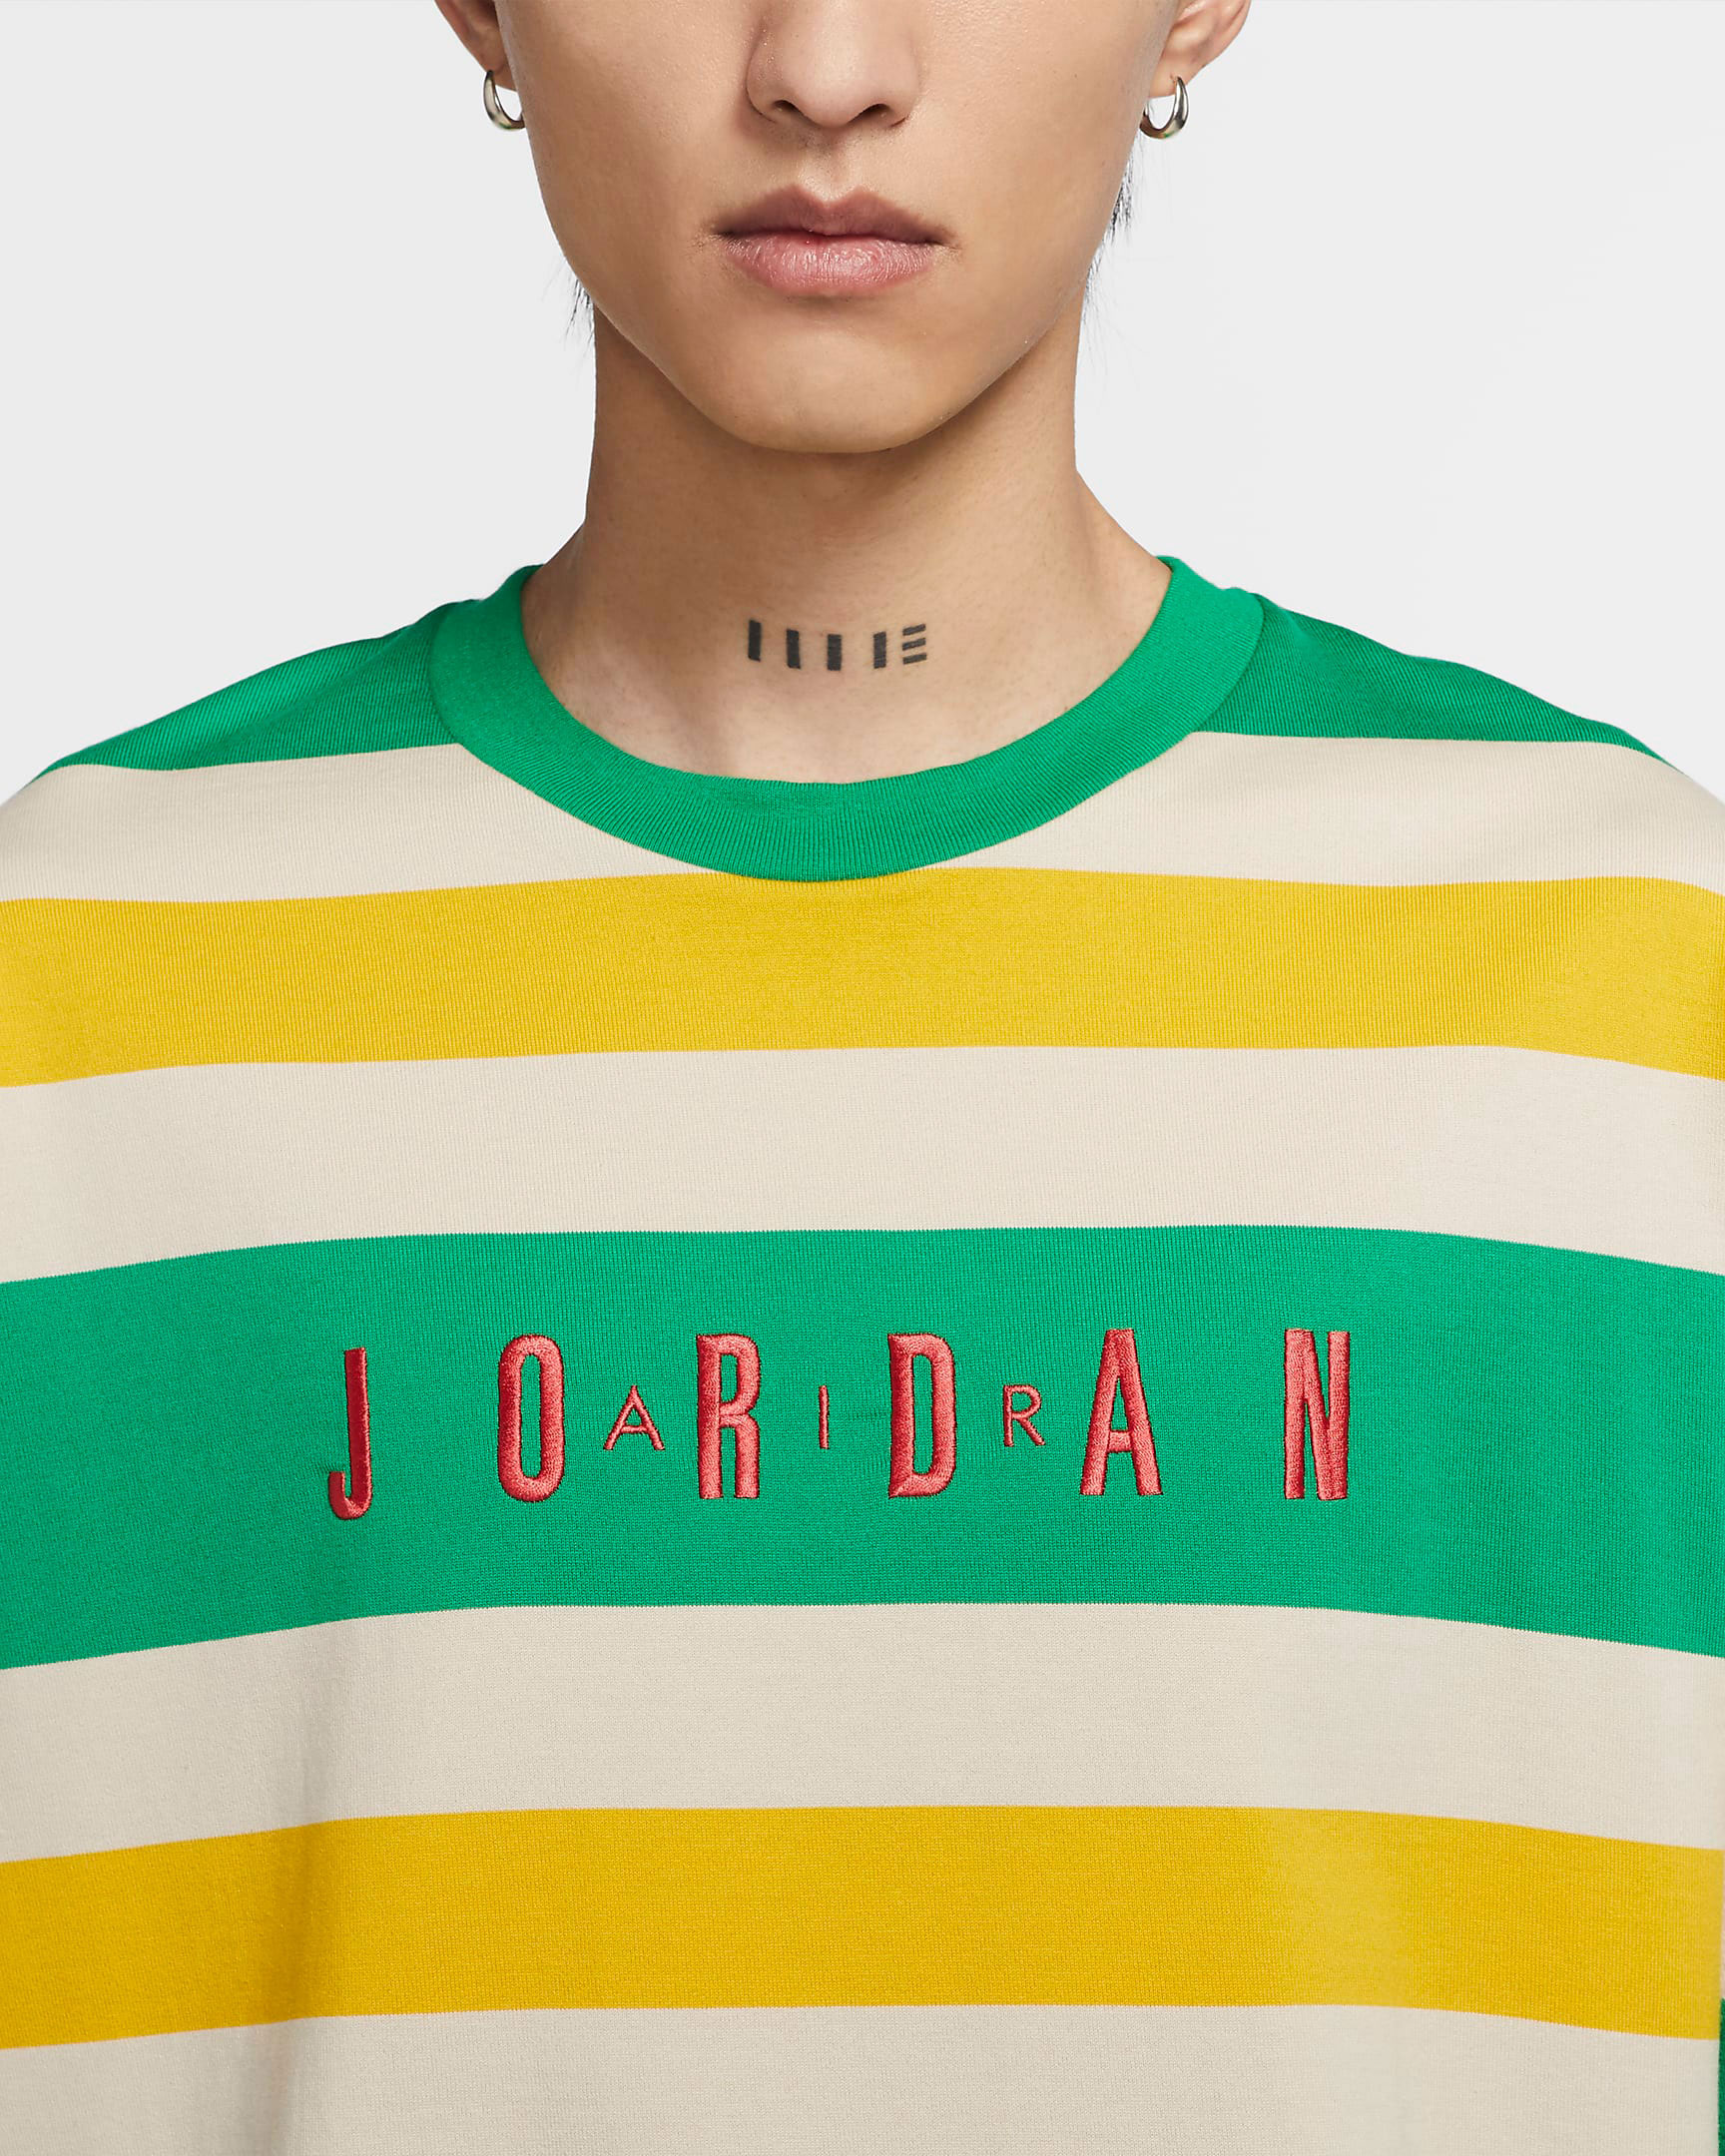 jordan-13-lucky-green-shirt-match-3